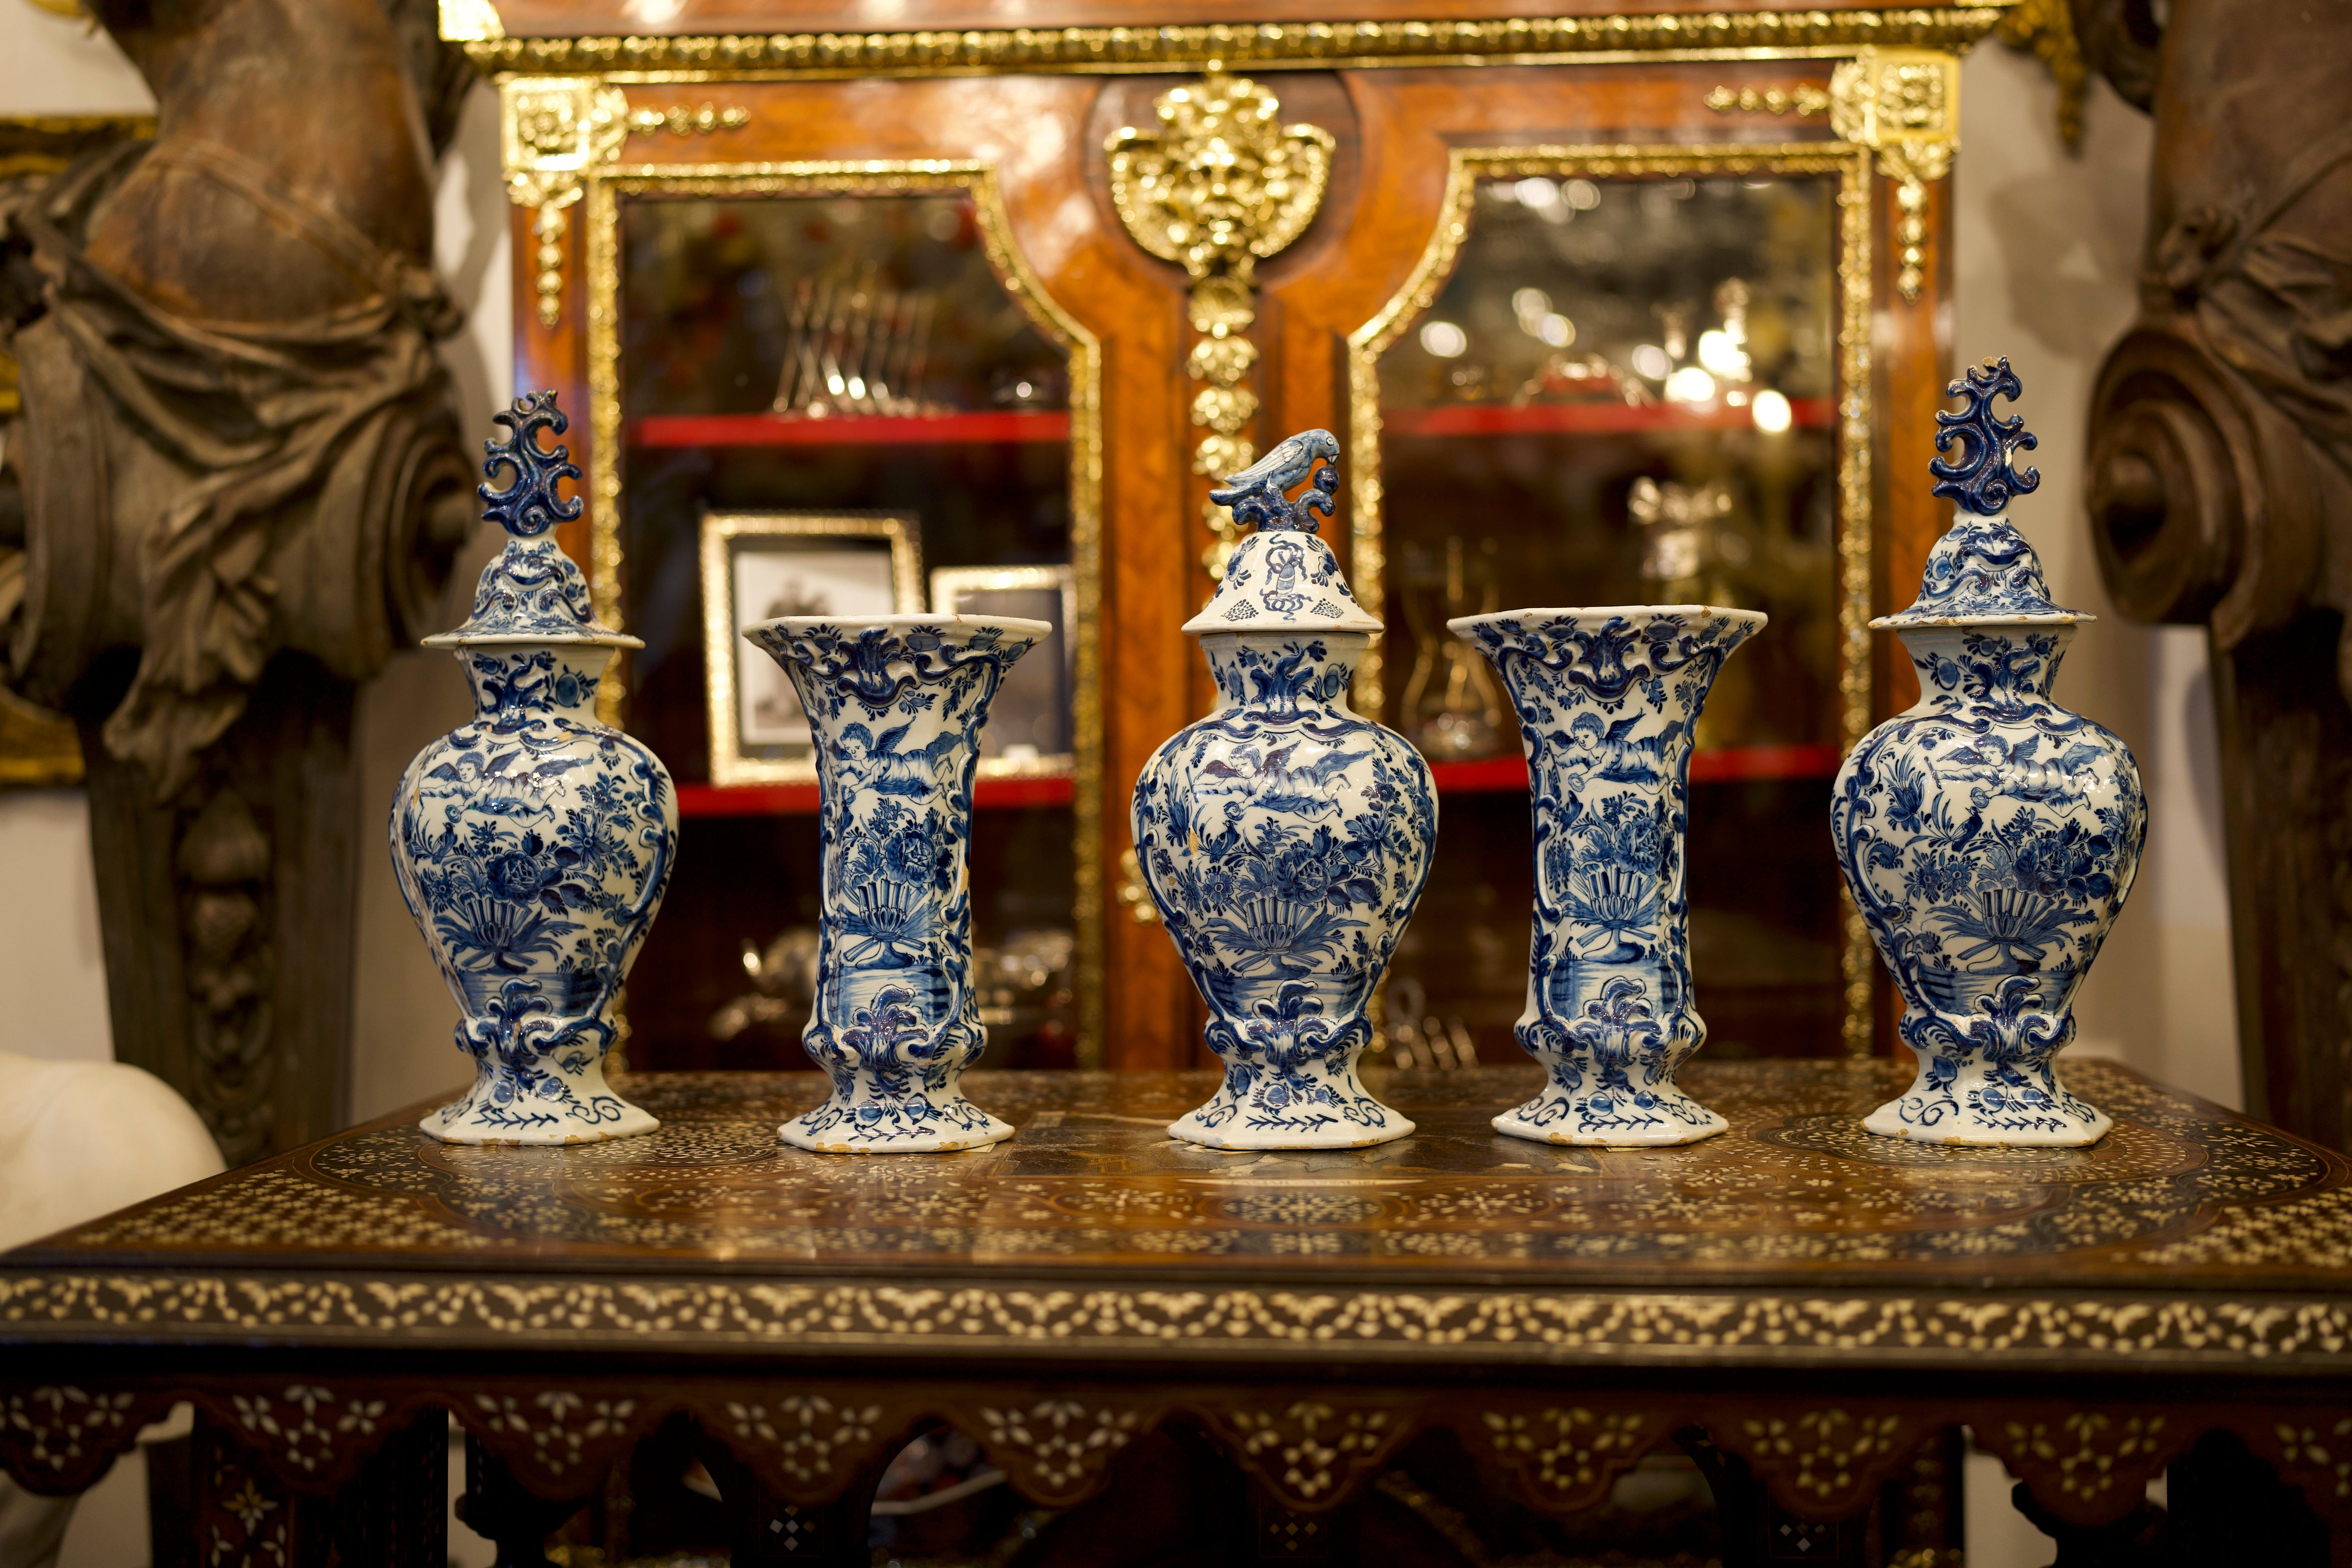 Eine atemberaubende Garnitur von Mitte des 18. Jahrhunderts holländischen Delft Blau und Weiß Vasen.
Der Satz ist durchgehend mit blütenblattförmigen Segmenten geformt und steht jeweils auf einem Fuß mit konvexem Profil über einem eingelassenen